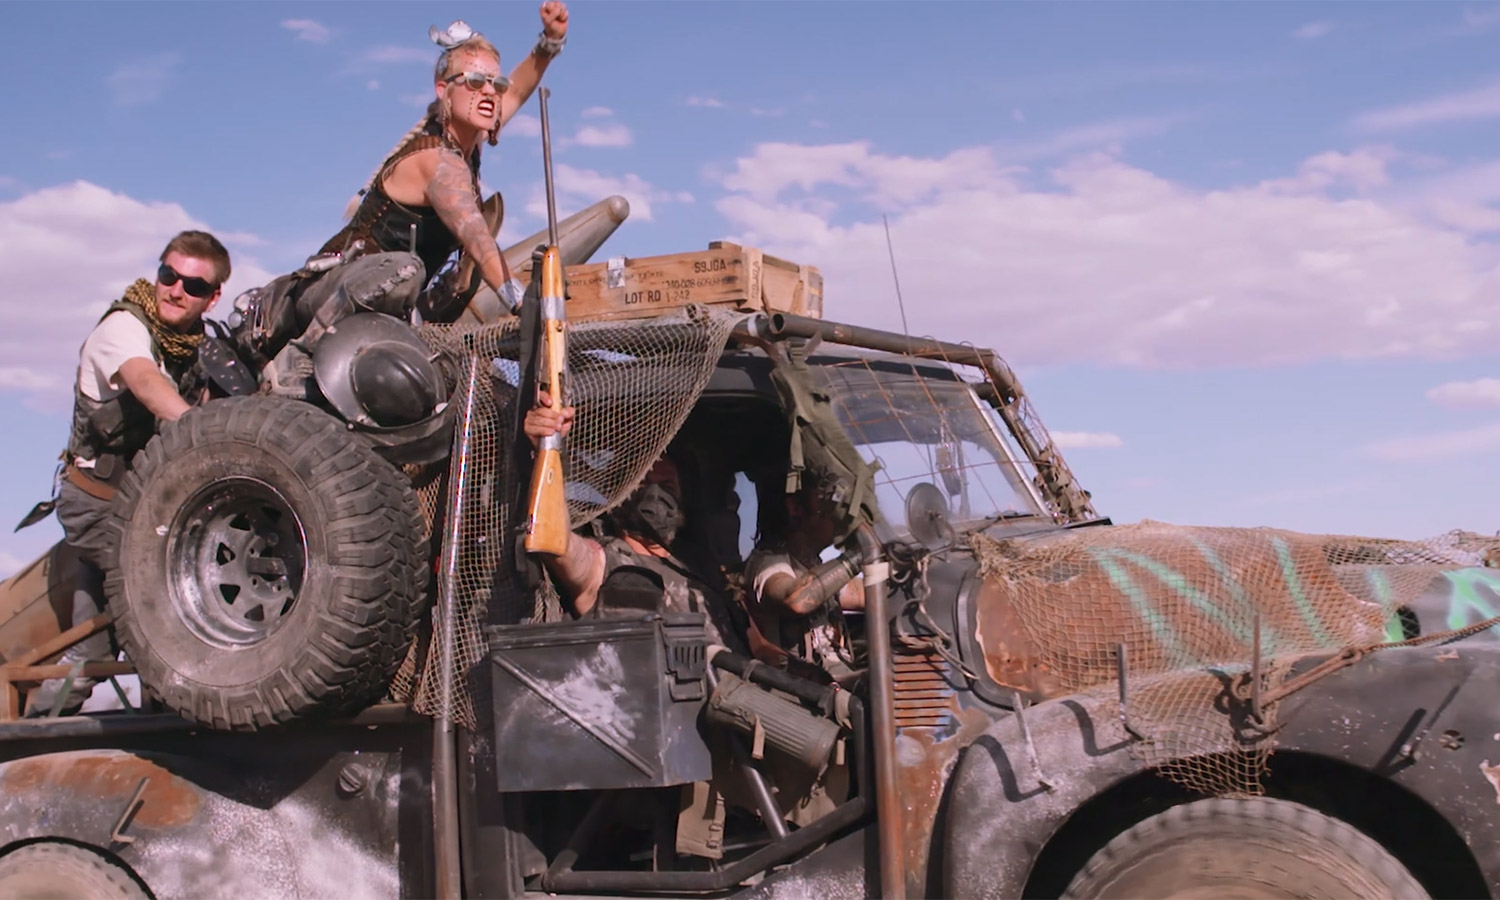 (Video y fotografías) Festival post-apocalístico al estilo Mad Max en el desierto